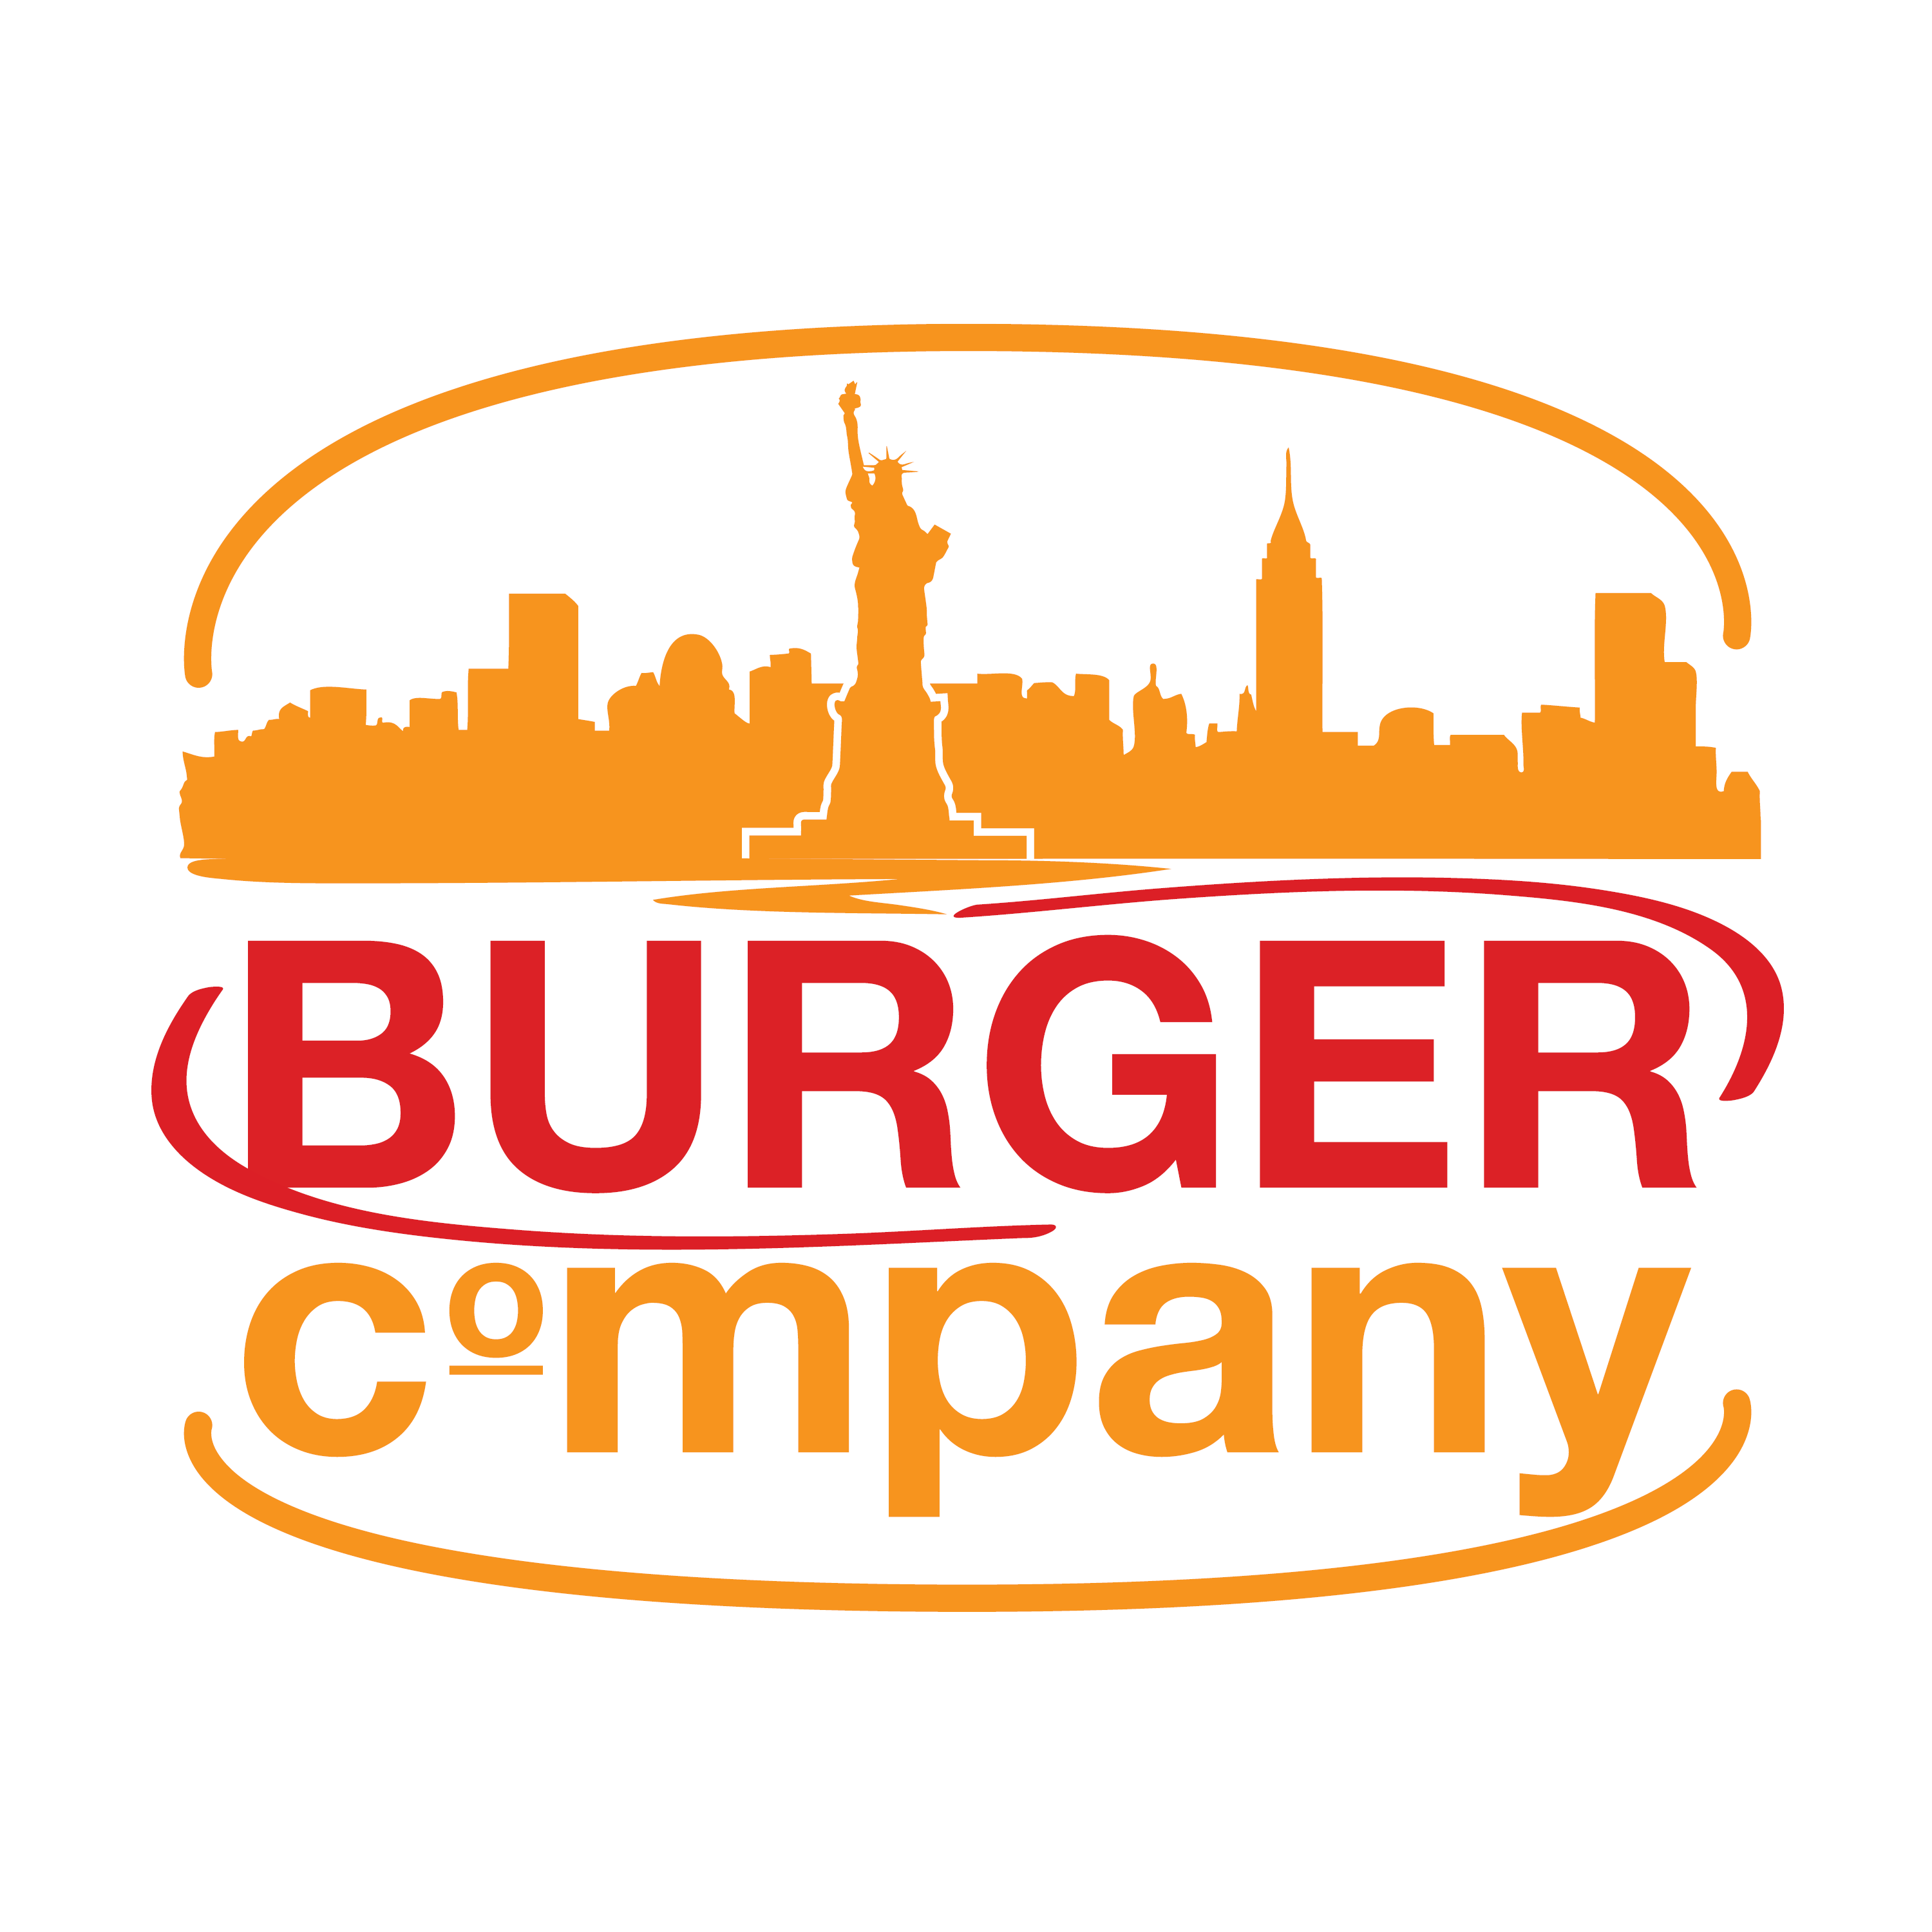 A - Burger Company Circle Logo